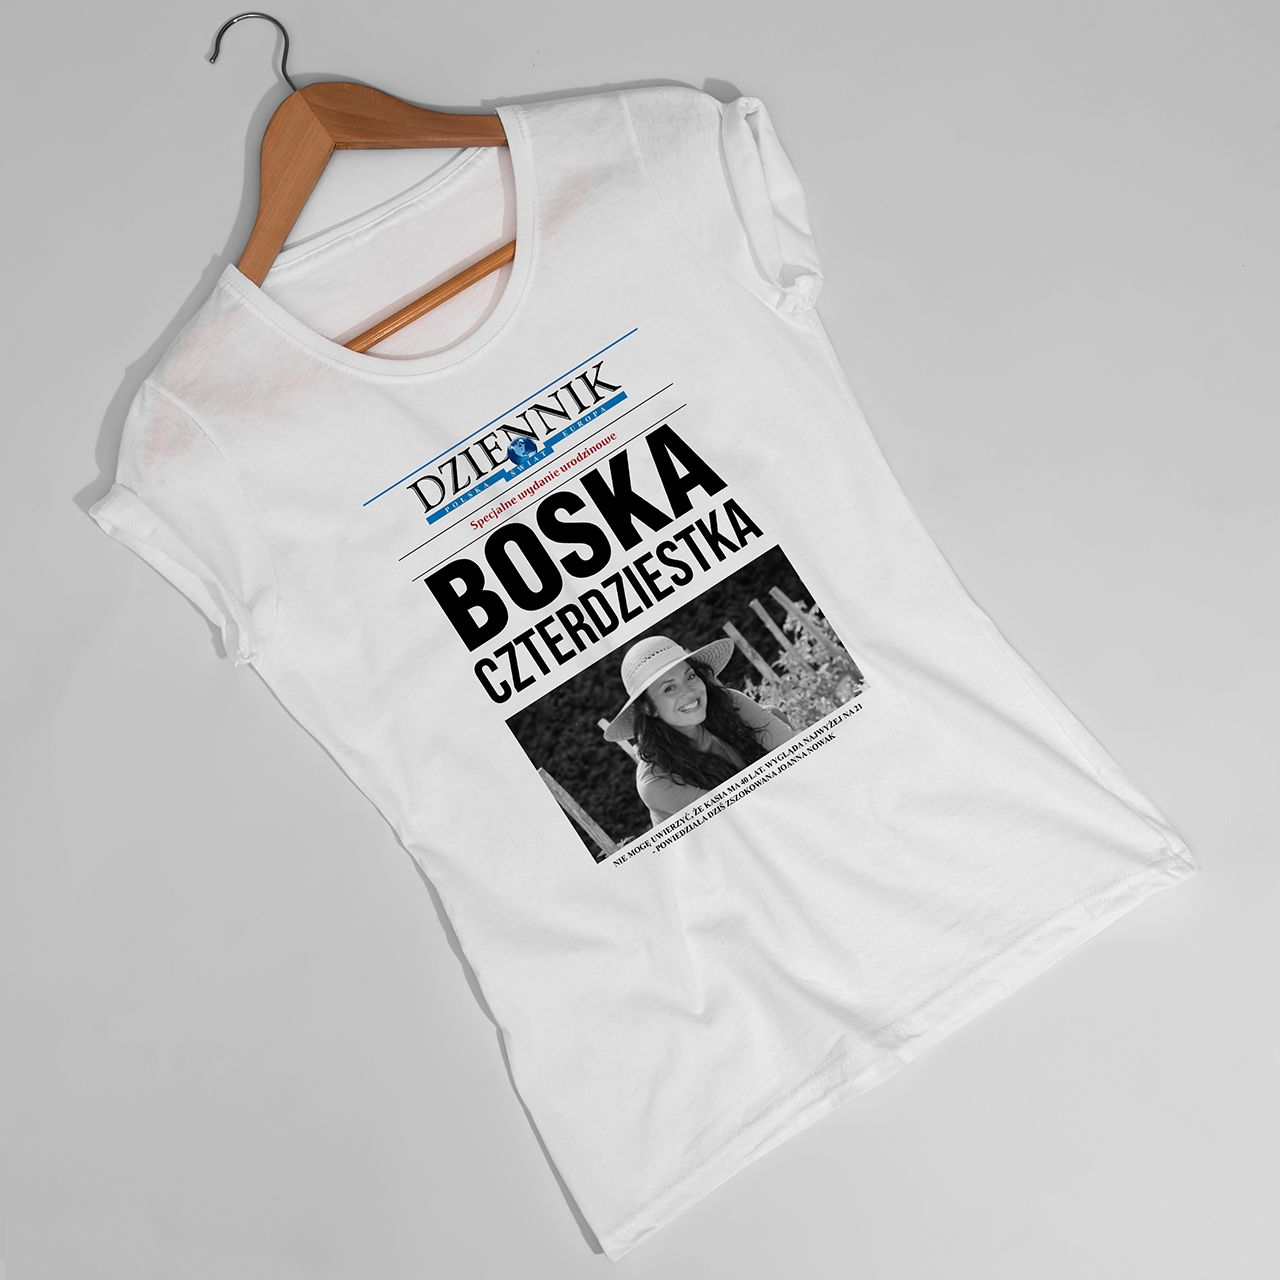 Koszulka damska z nadrukiem DZIENNIK prezent na 40 urodziny - L